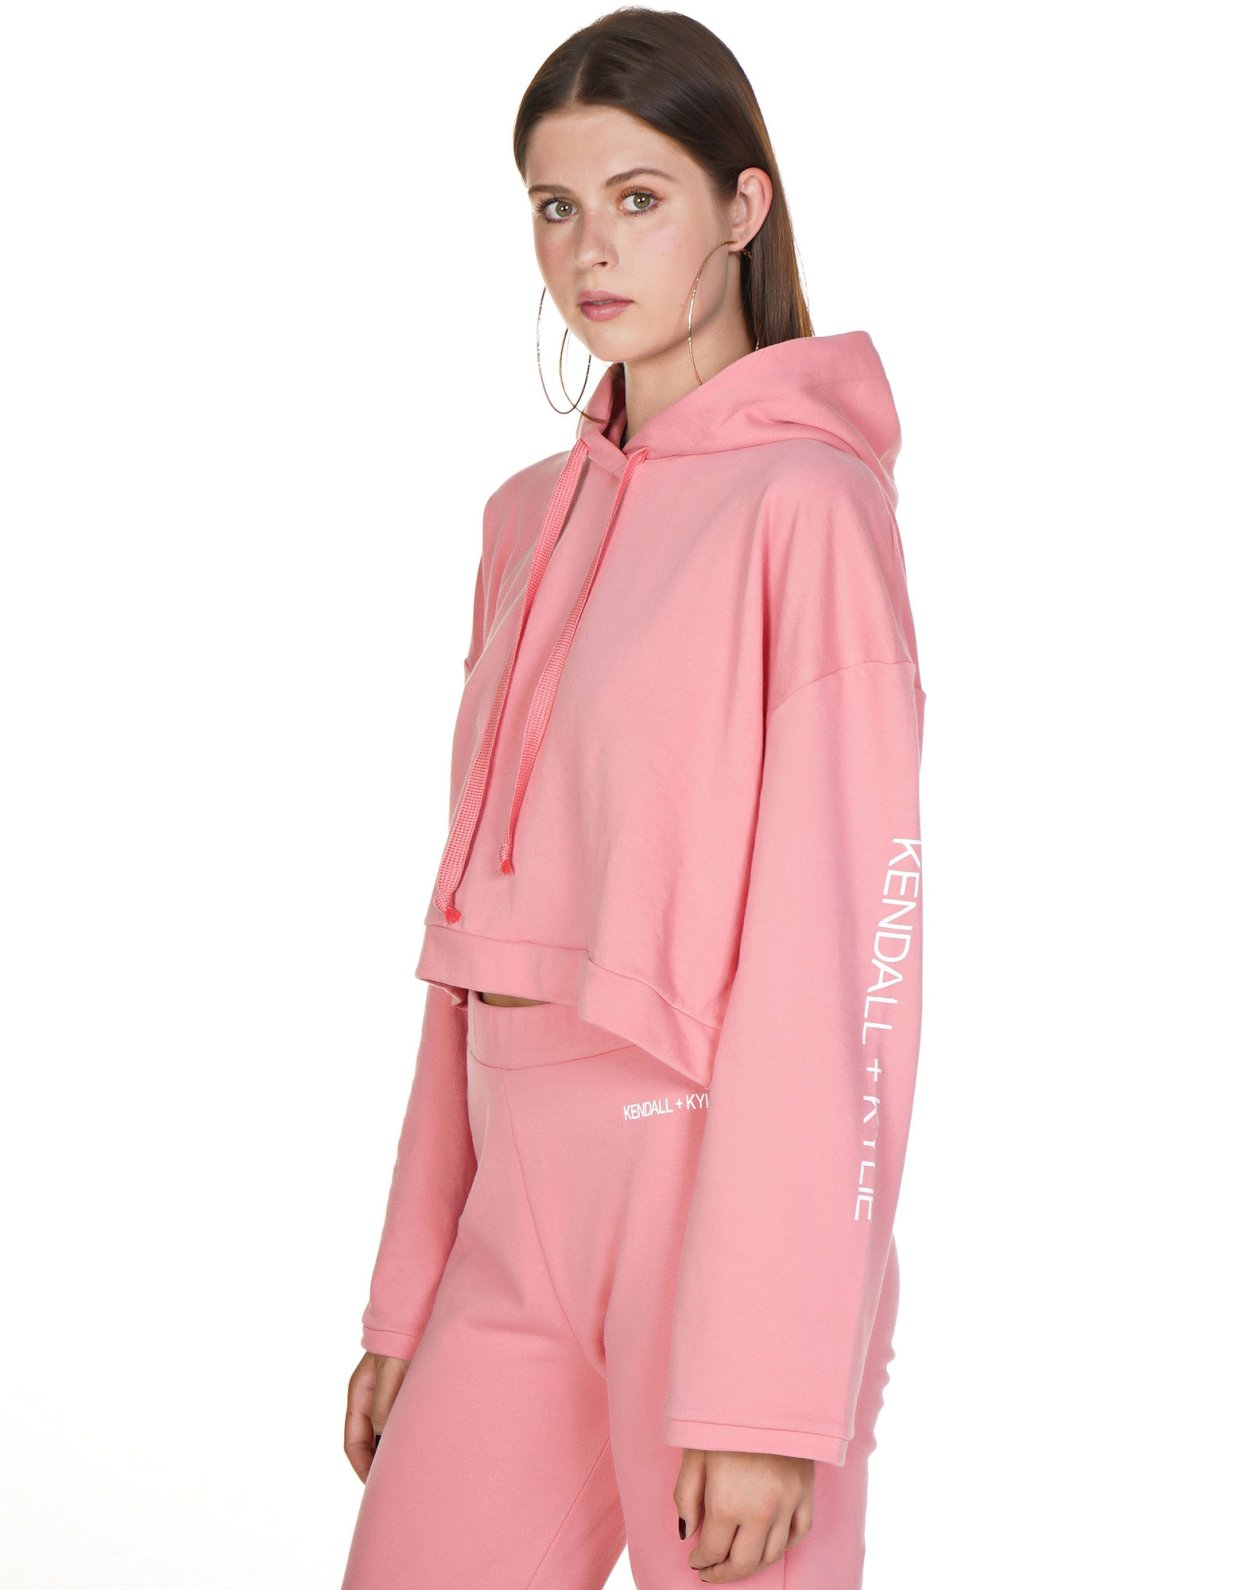 Kendall + Kylie Cropped loose hooded sweatshirt rose pink